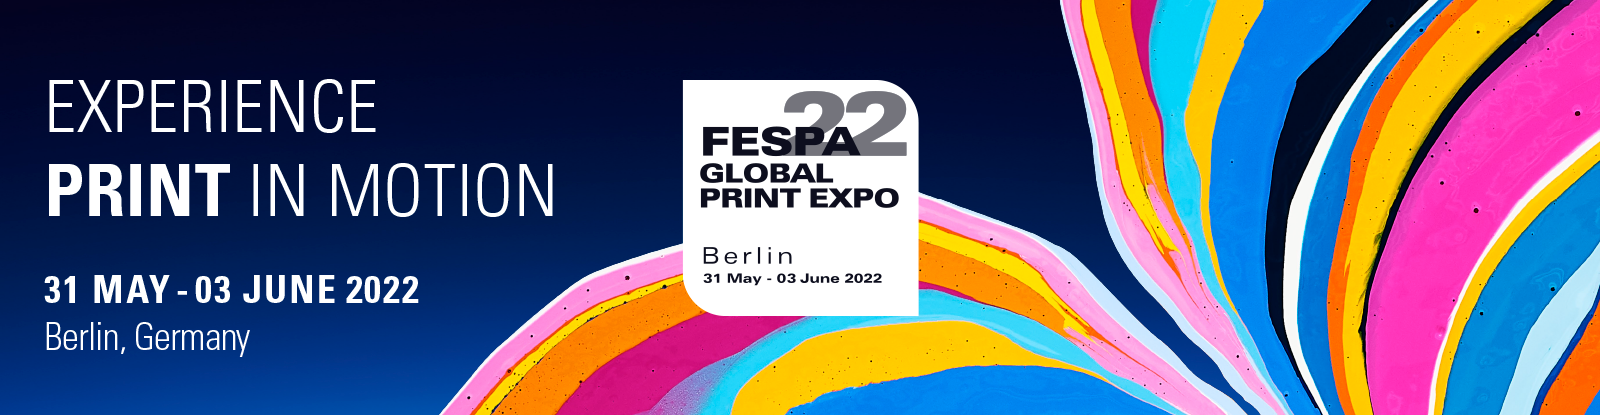 Apprendre à marcher sur l’eau / Fespa Global Print Expo Berlin